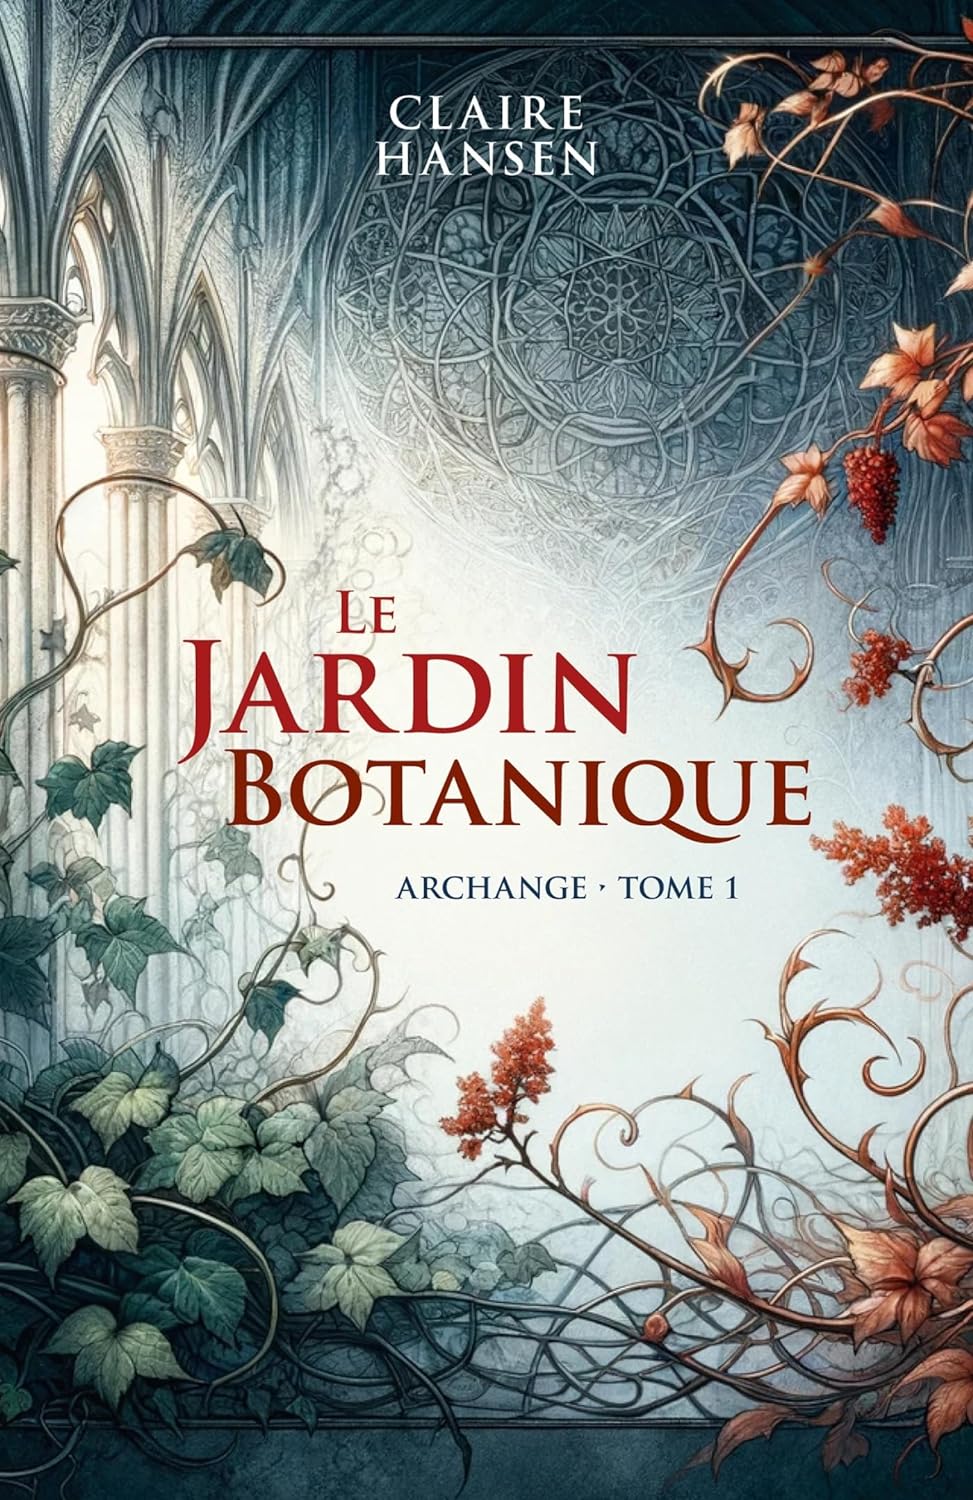 LE JARDIN BOTANIQUE, Archange, un roman de Claire Hansen.